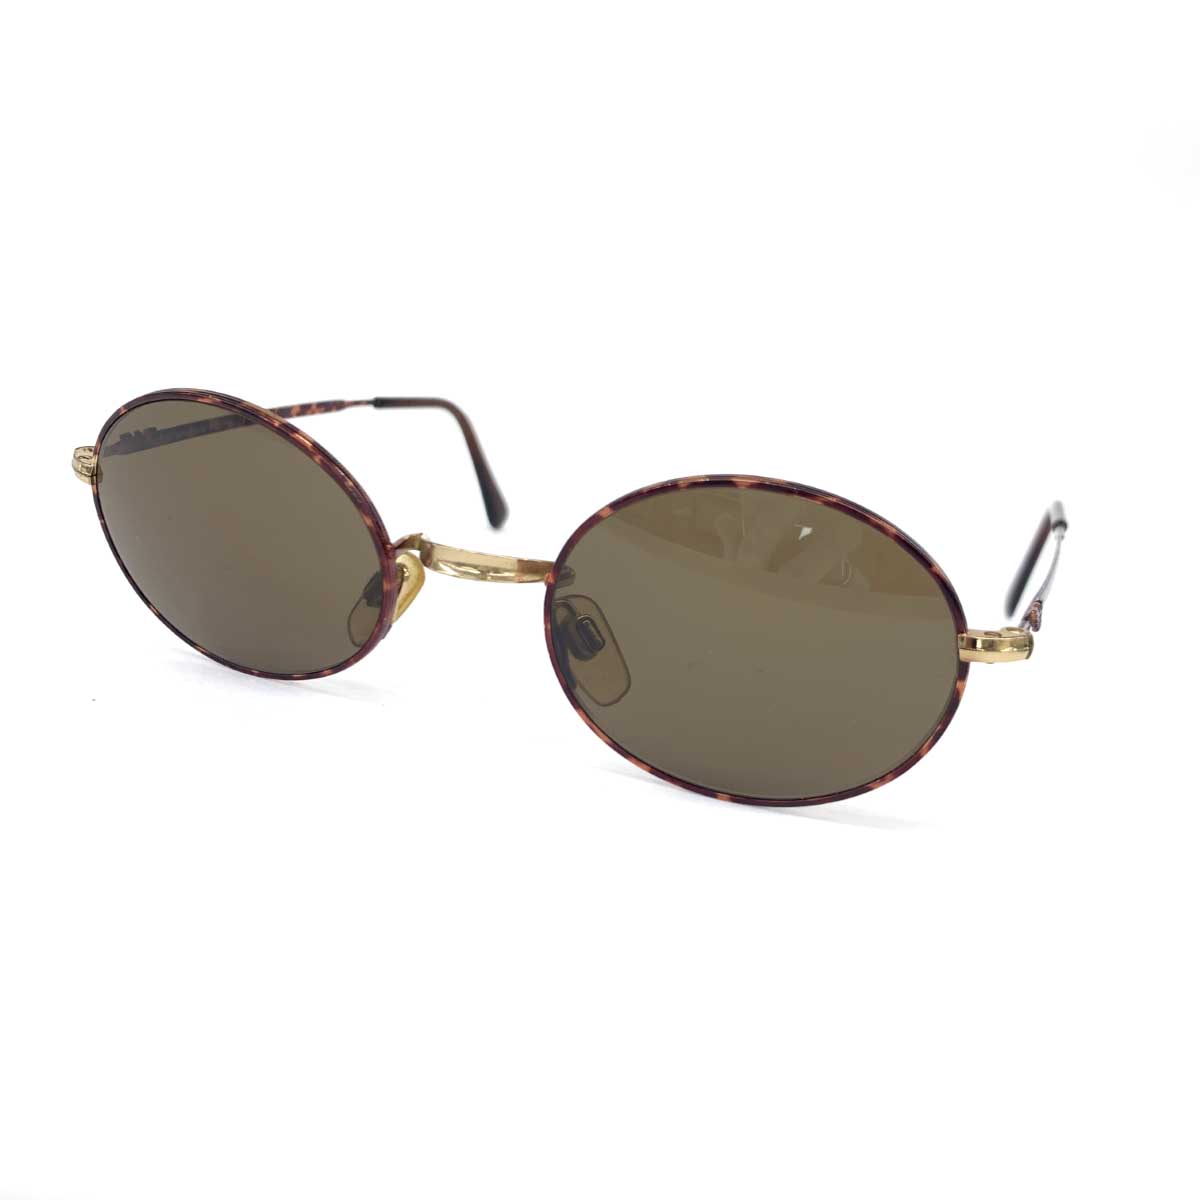 EMPORIO ARMANI エンポリオアルマーニ サングラス 002 721 ブラウン オーバル べっ甲 ユニセックス イタリア製 sunglasses 服飾小物 